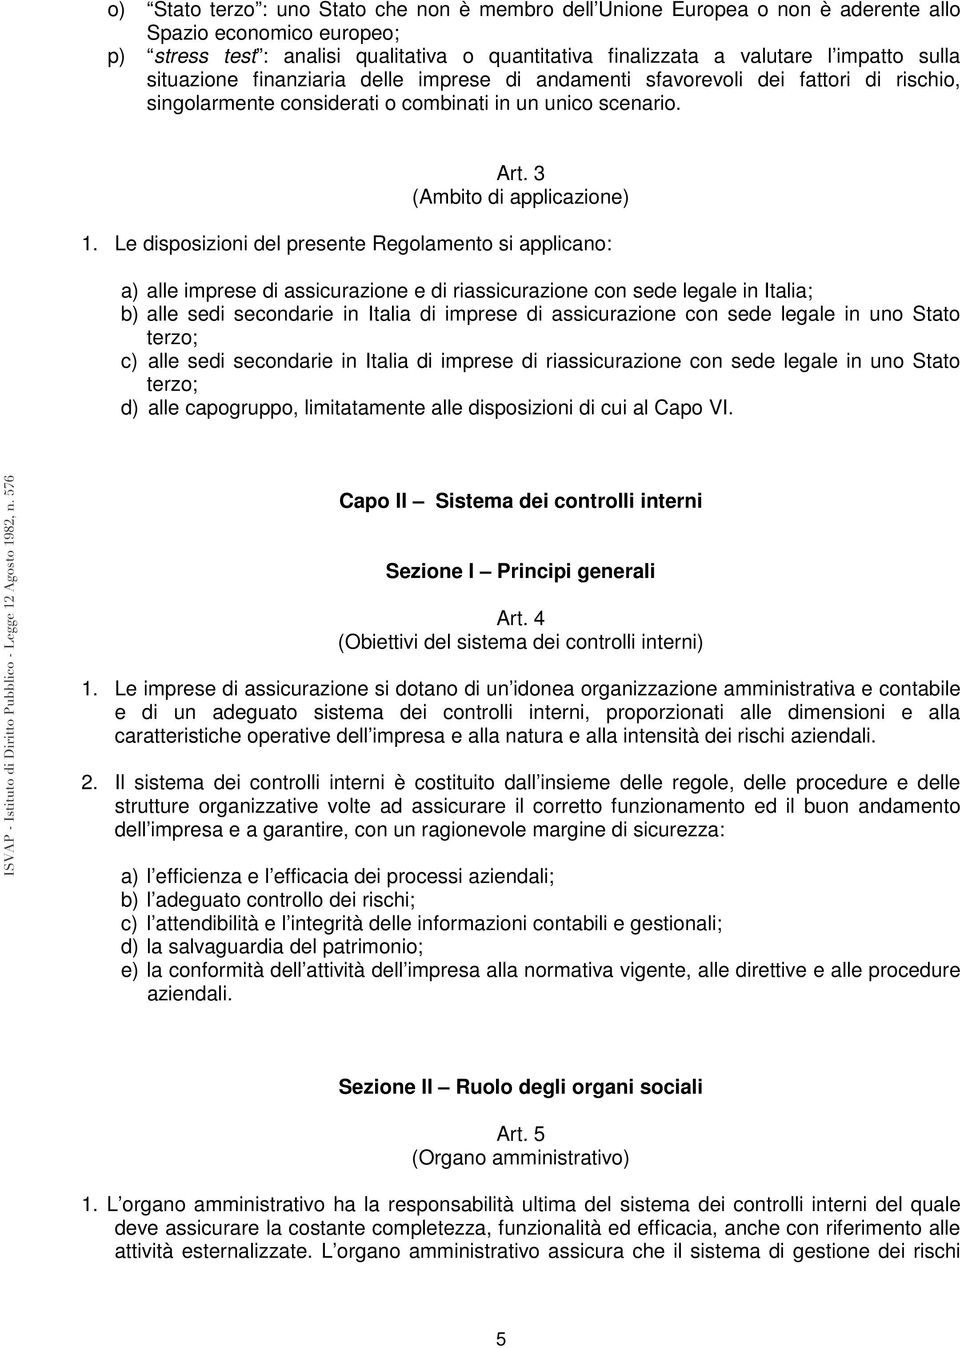 Le disposizioni del presente Regolamento si applicano: a) alle imprese di assicurazione e di riassicurazione con sede legale in Italia; b) alle sedi secondarie in Italia di imprese di assicurazione